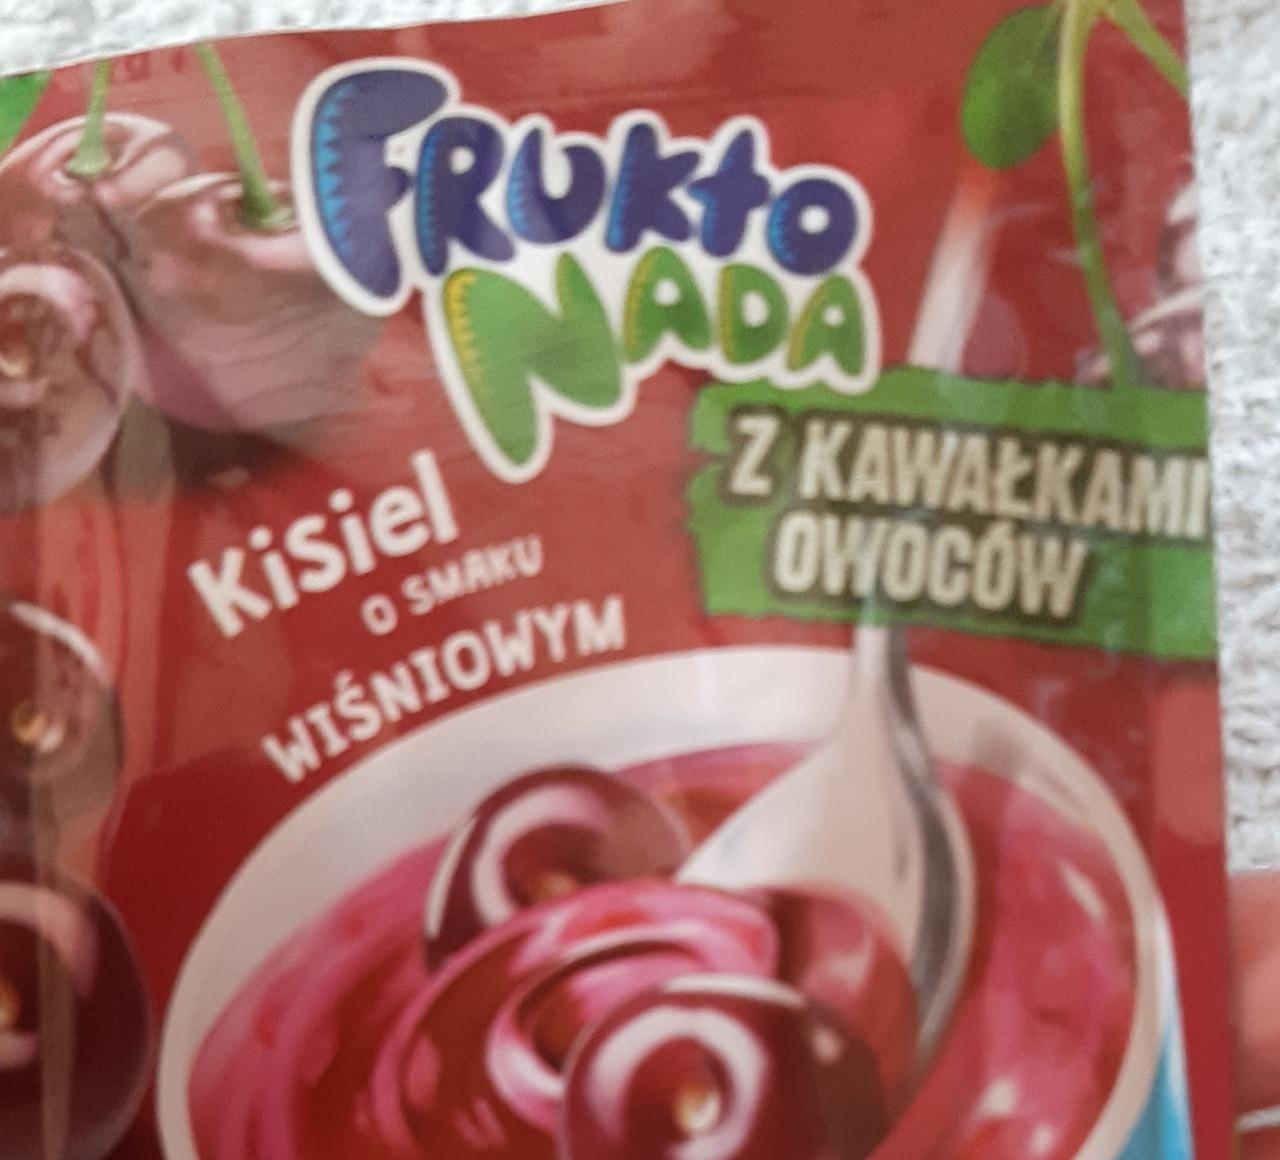 Zdjęcia - Kisiel o smaku wiśniowym Frukto Nada